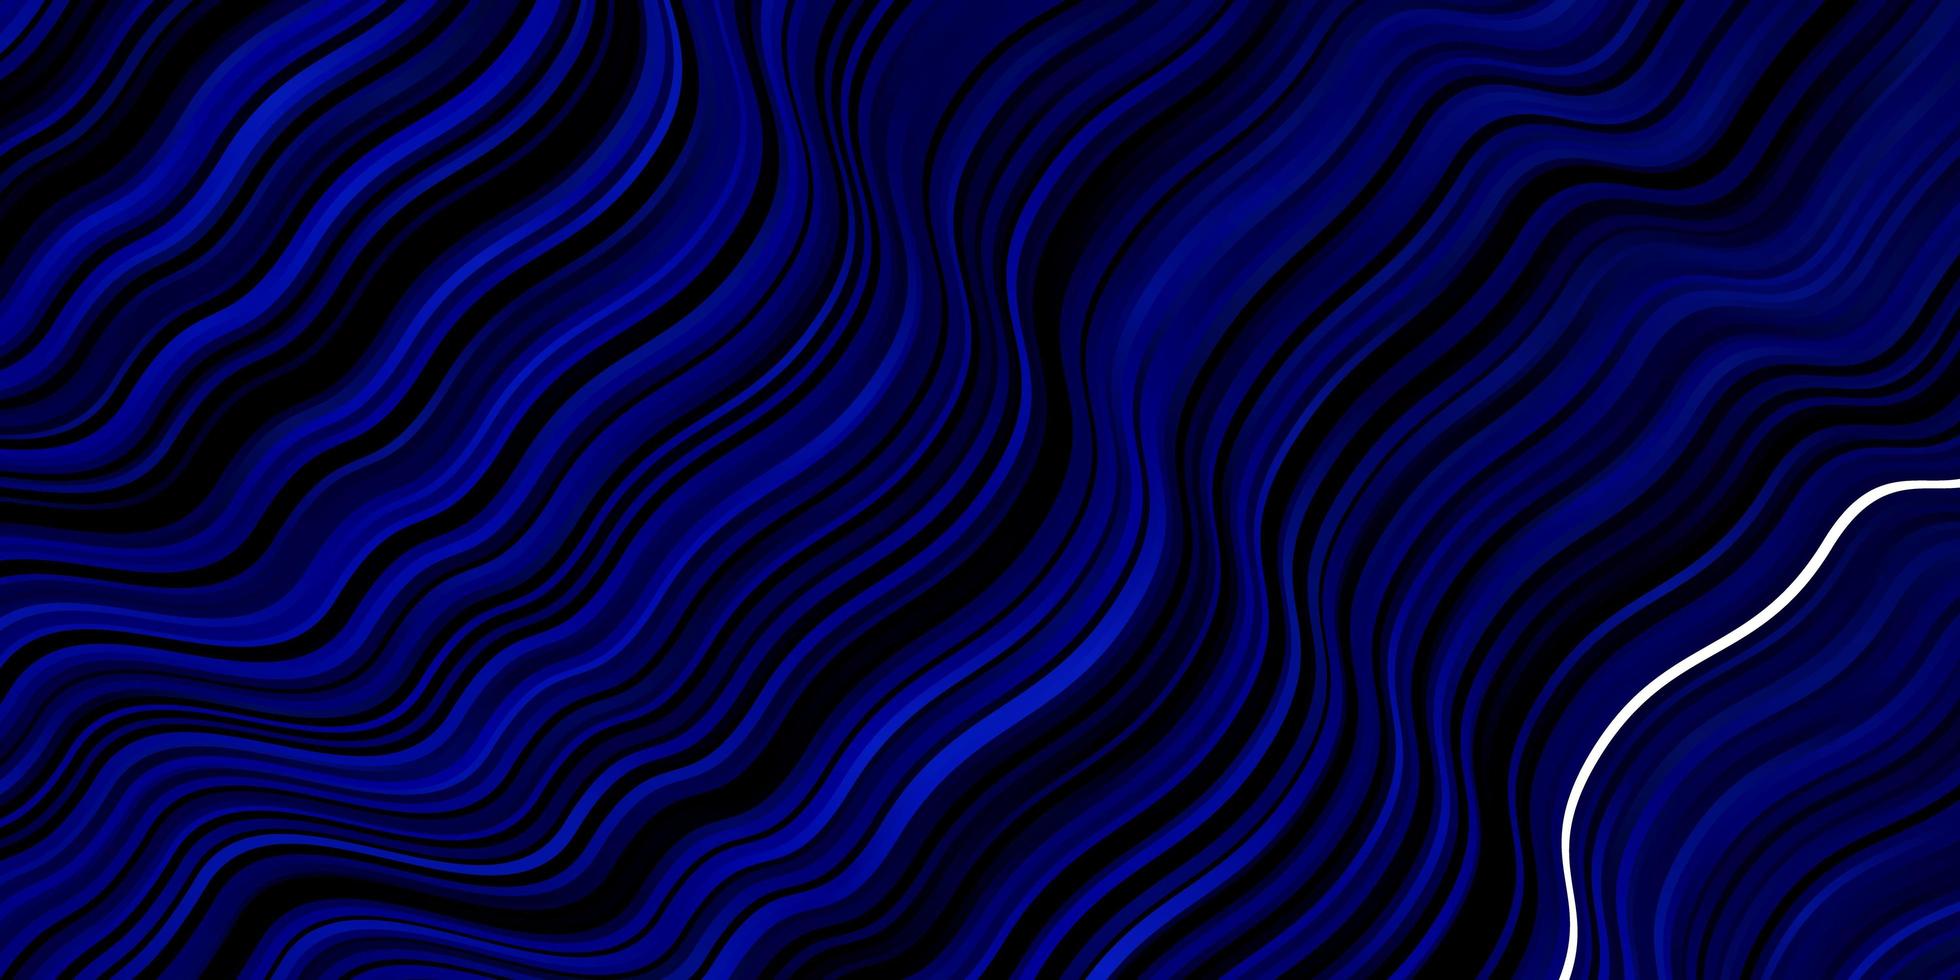 mörkblå vektormall med böjda linjer. vektor